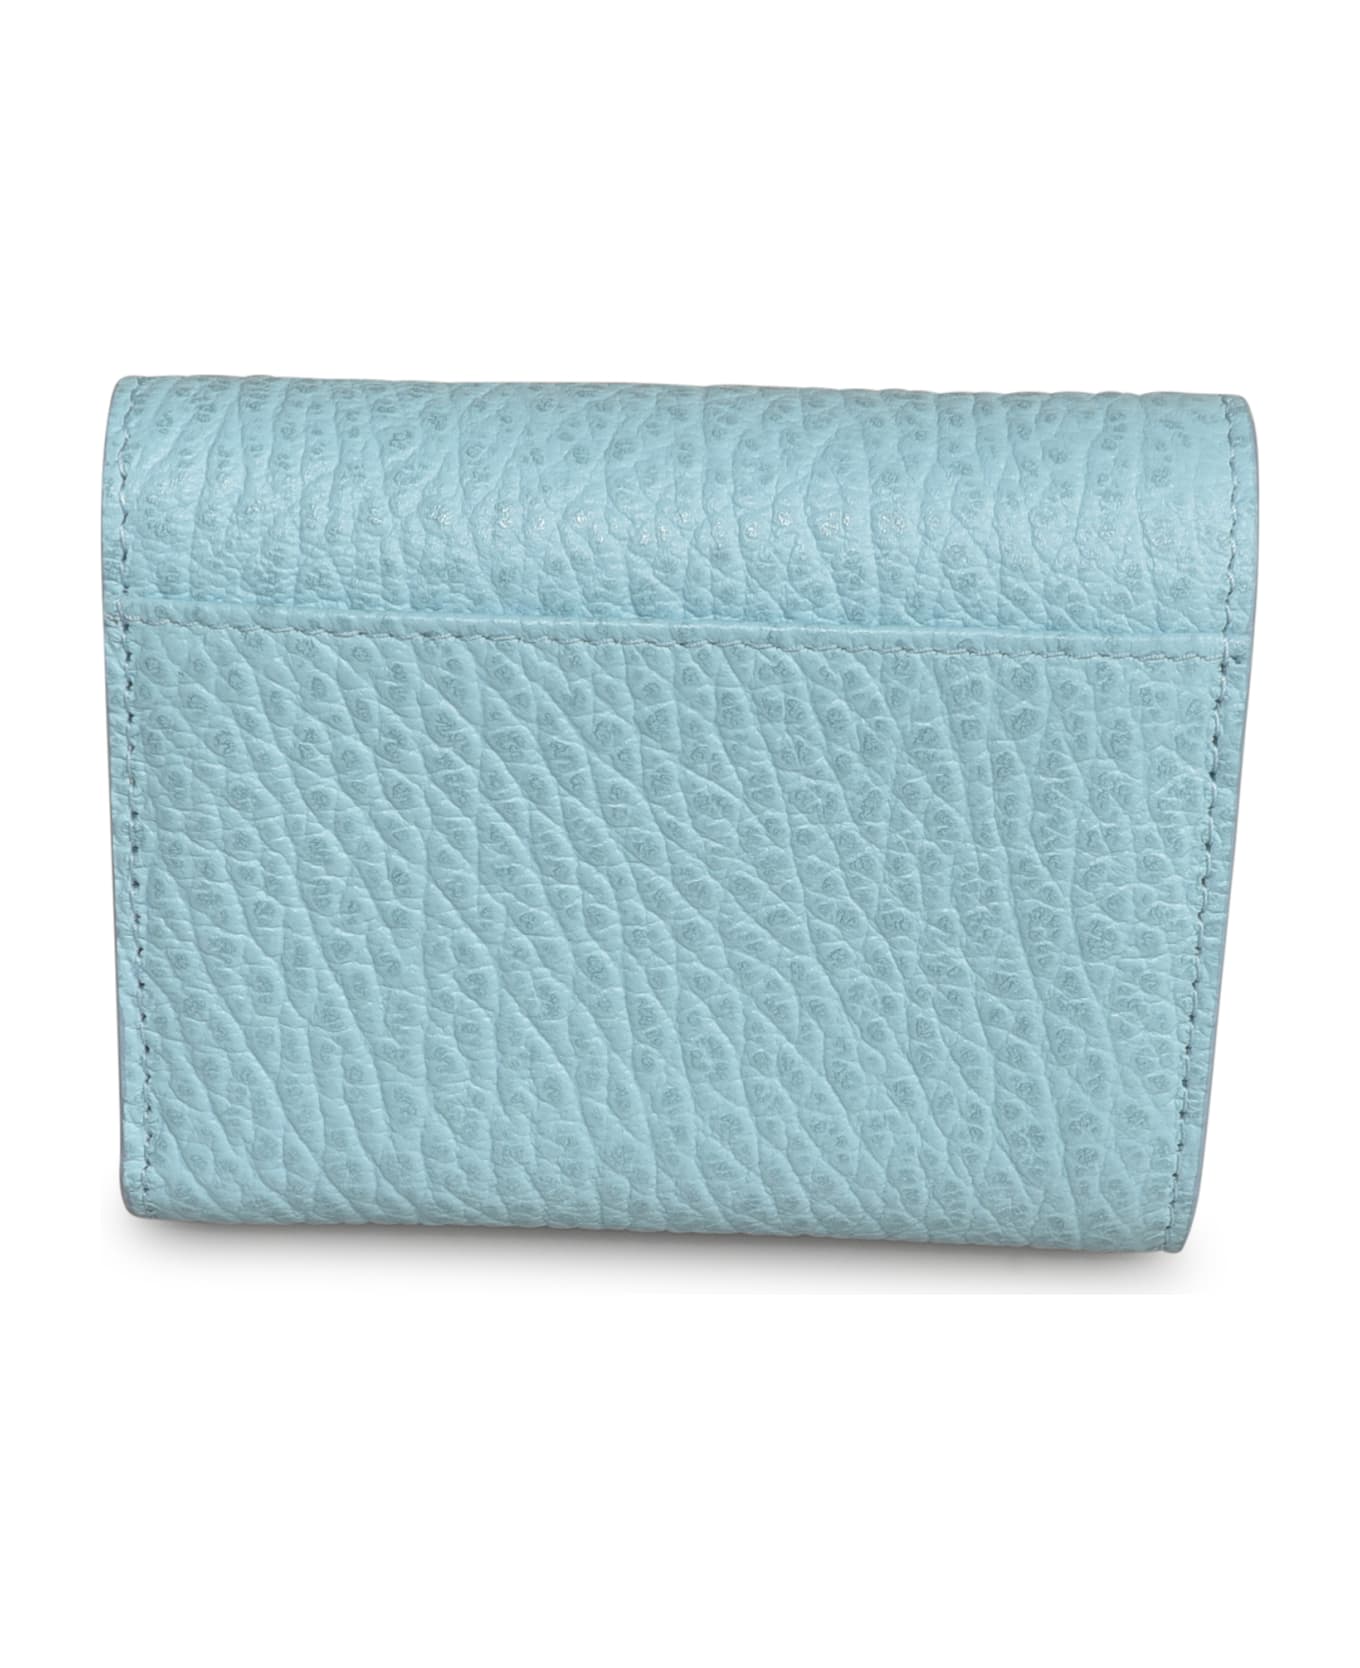 Maison Margiela Four Stitches Snap Button Wallet - Light Blue